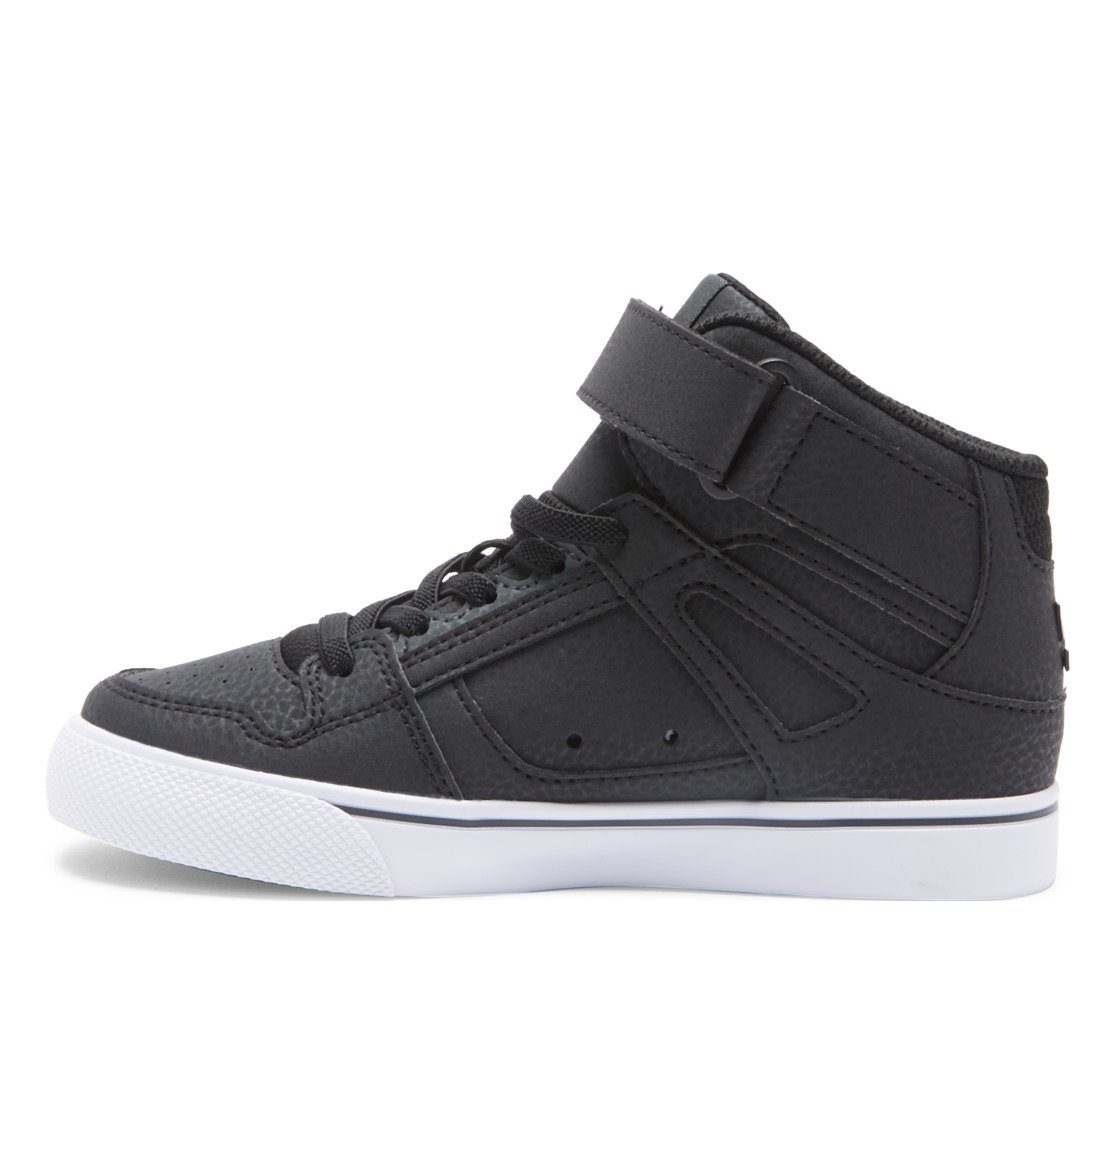 DC Shoes Pure Hi Sneaker SE Black/White/Black